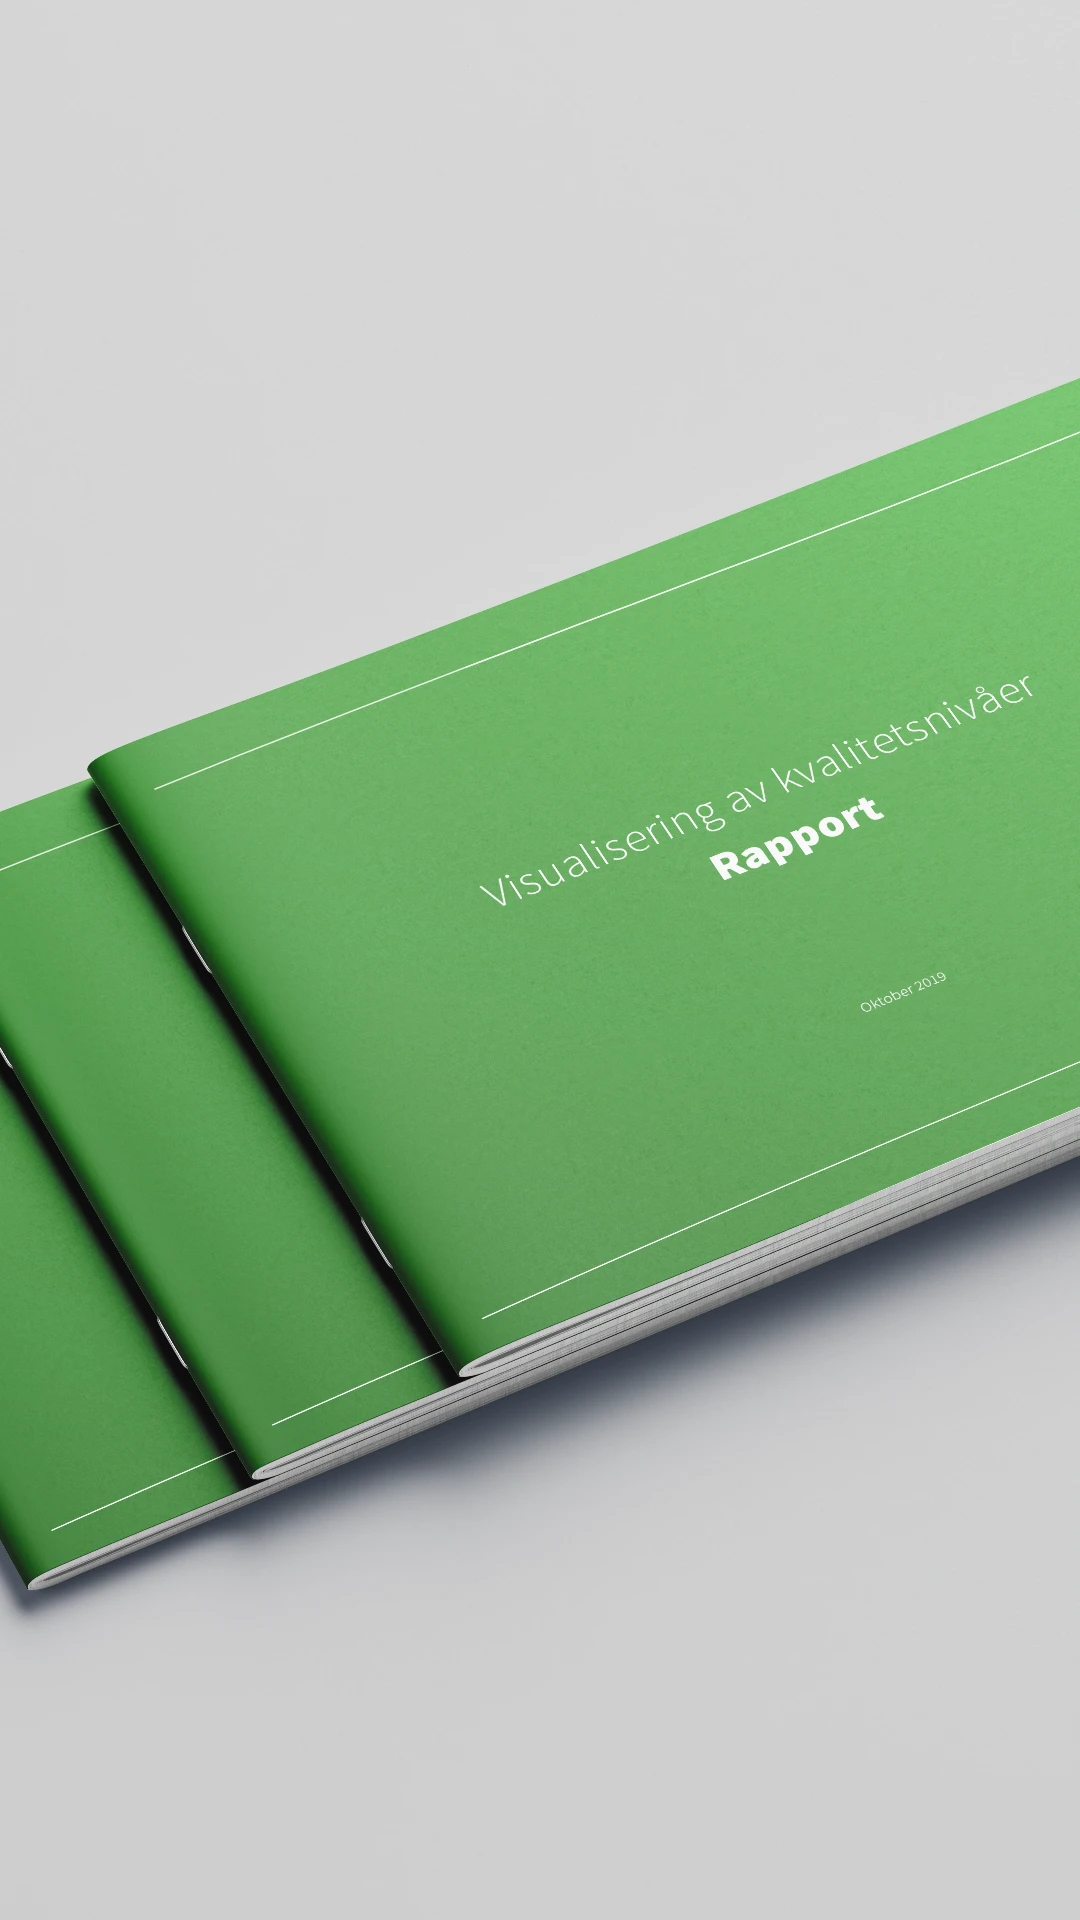 Ett närbildsfoto av tre gröna rapporter staplade på varandra med titeln "Visualisering av kvalitetsnivåer".